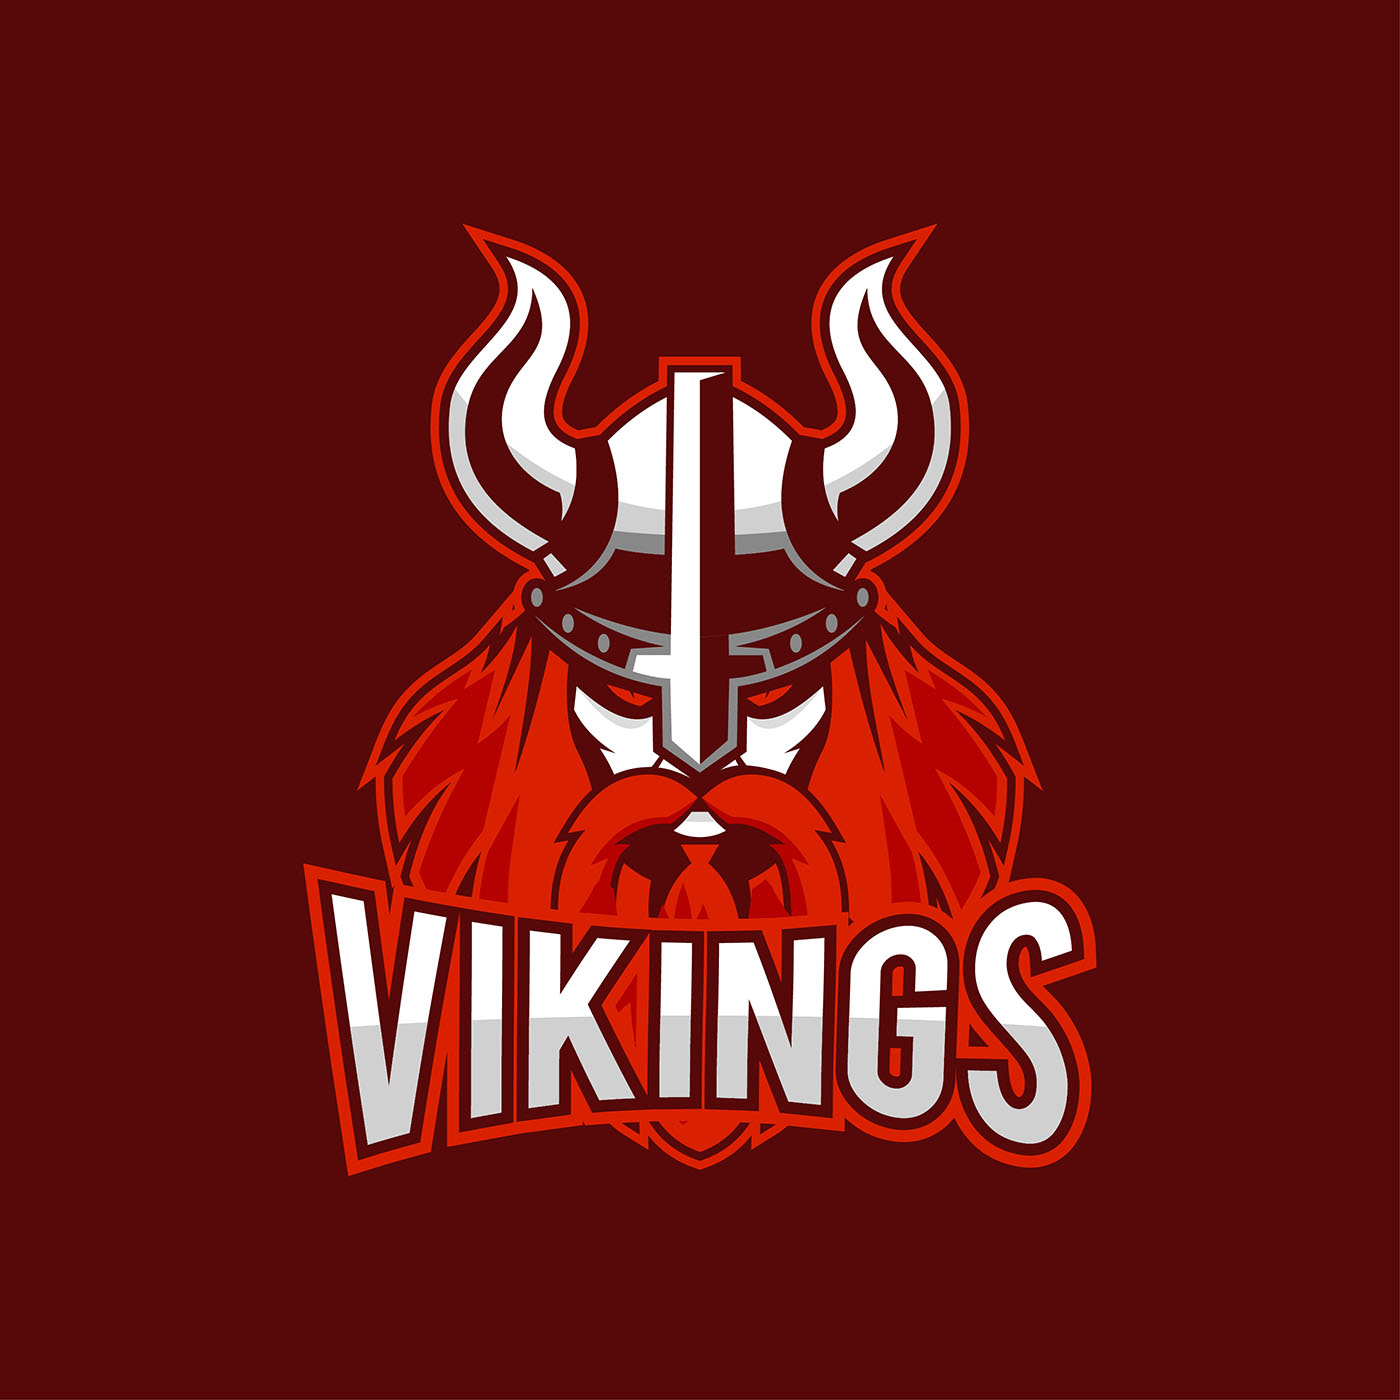 Viking Logo Free Vector Art - (5498 Free Downloads)